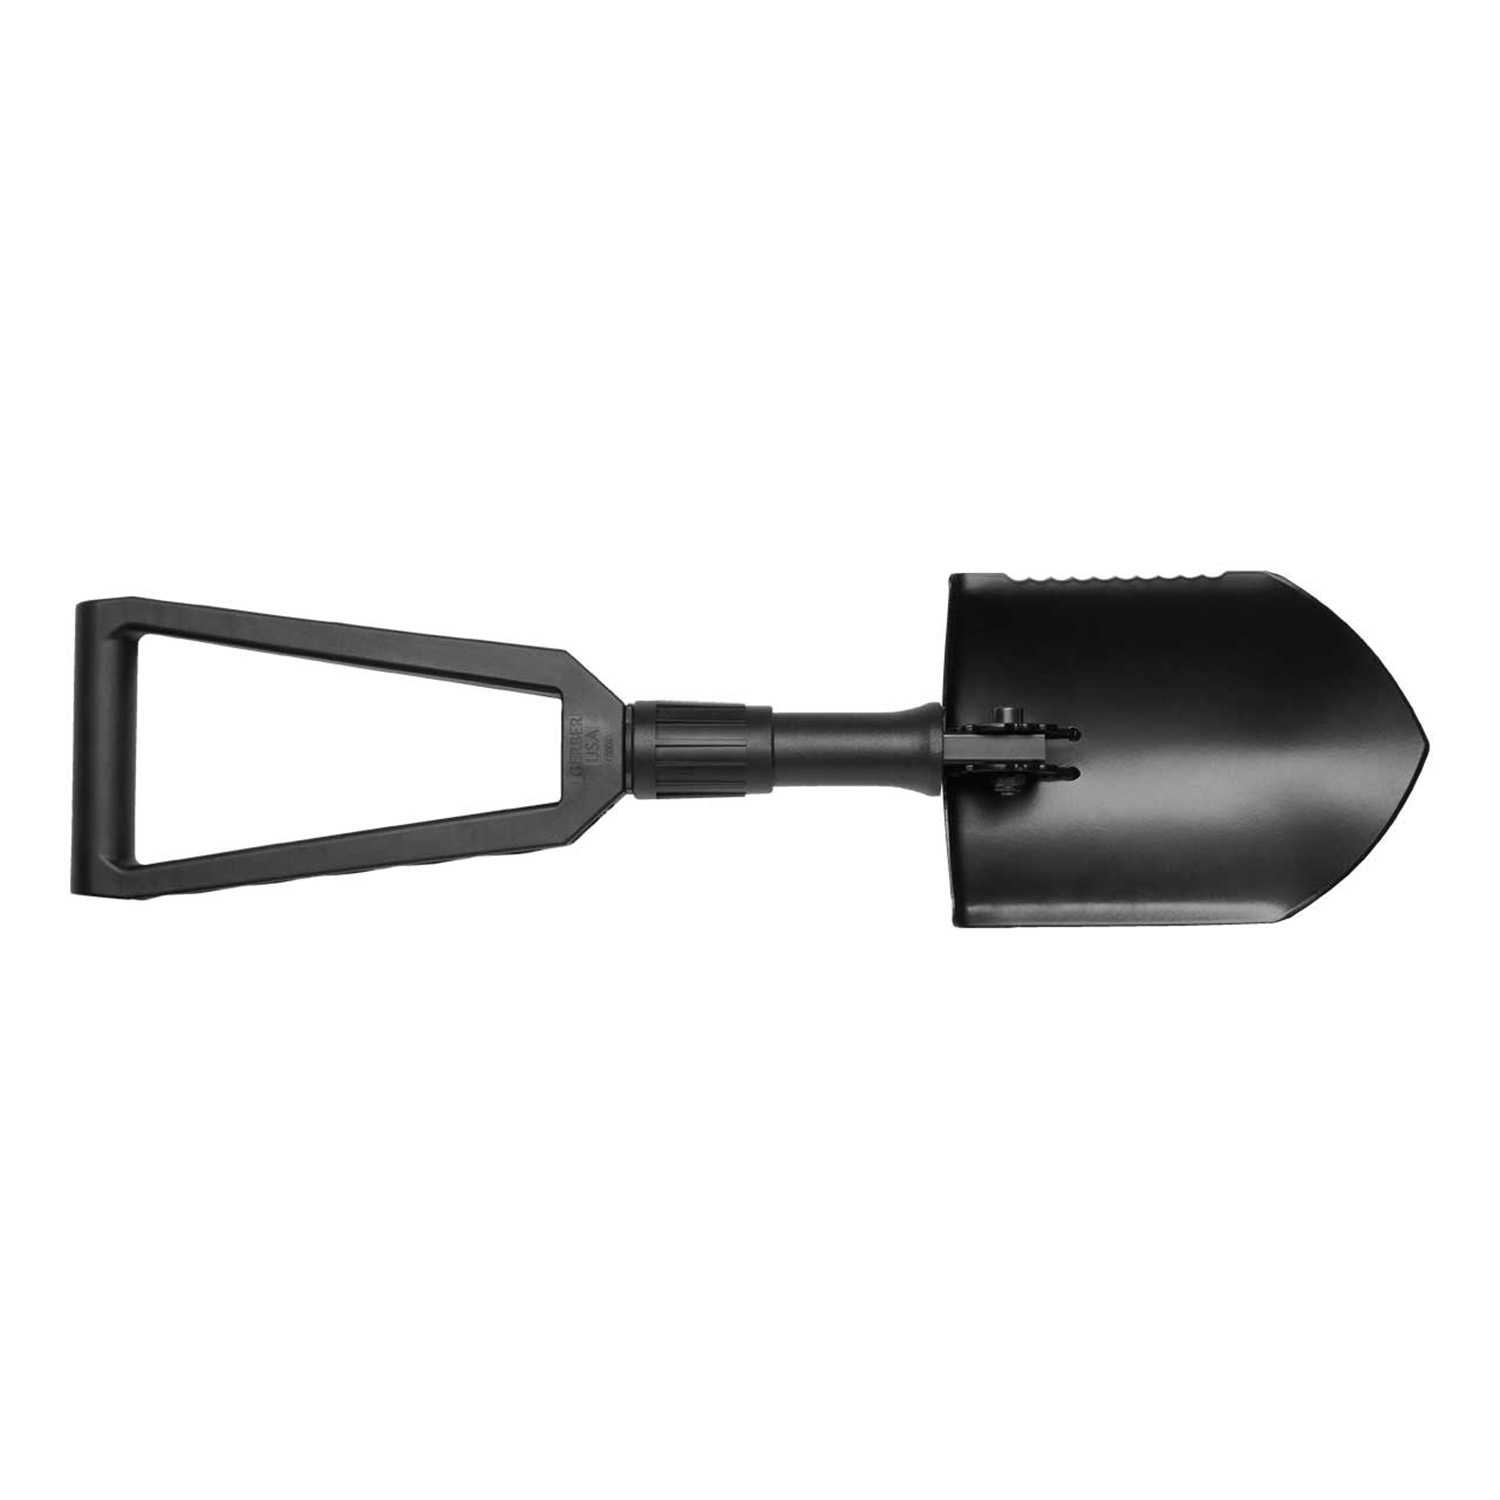 Gerber foldable shovel